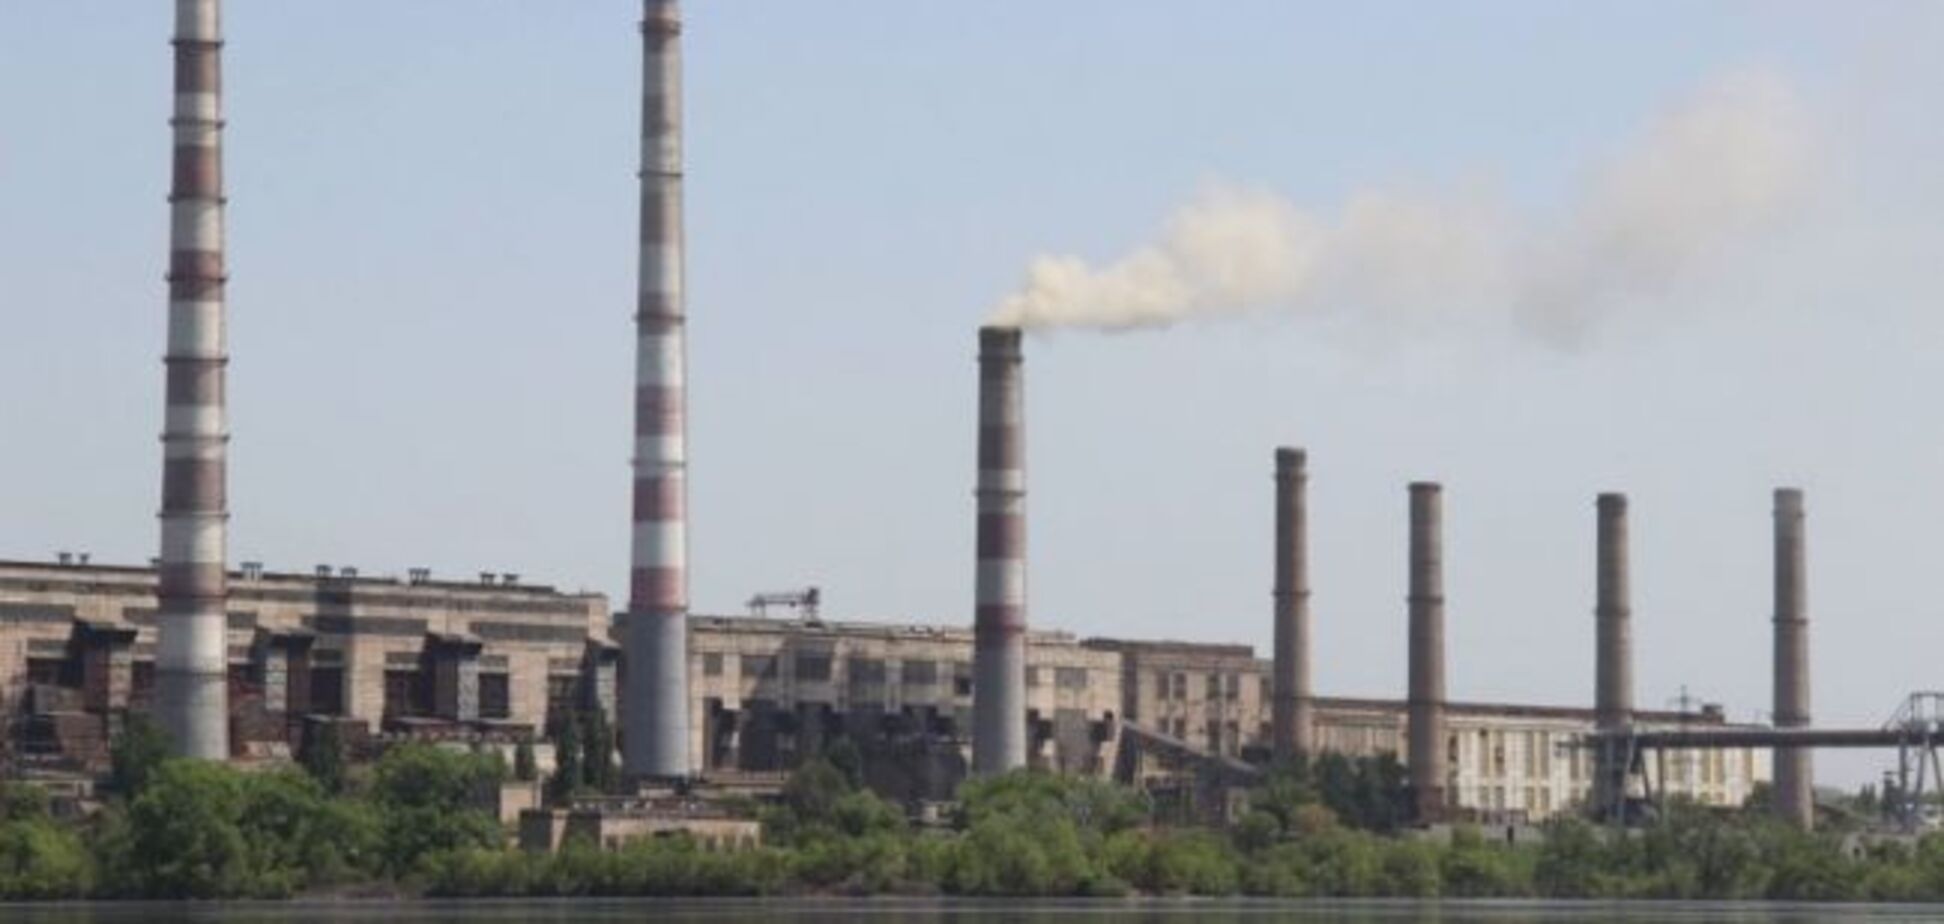 Отключение Приднепровской ТЭС не повлияло на энергоснабжение – ДТЭК